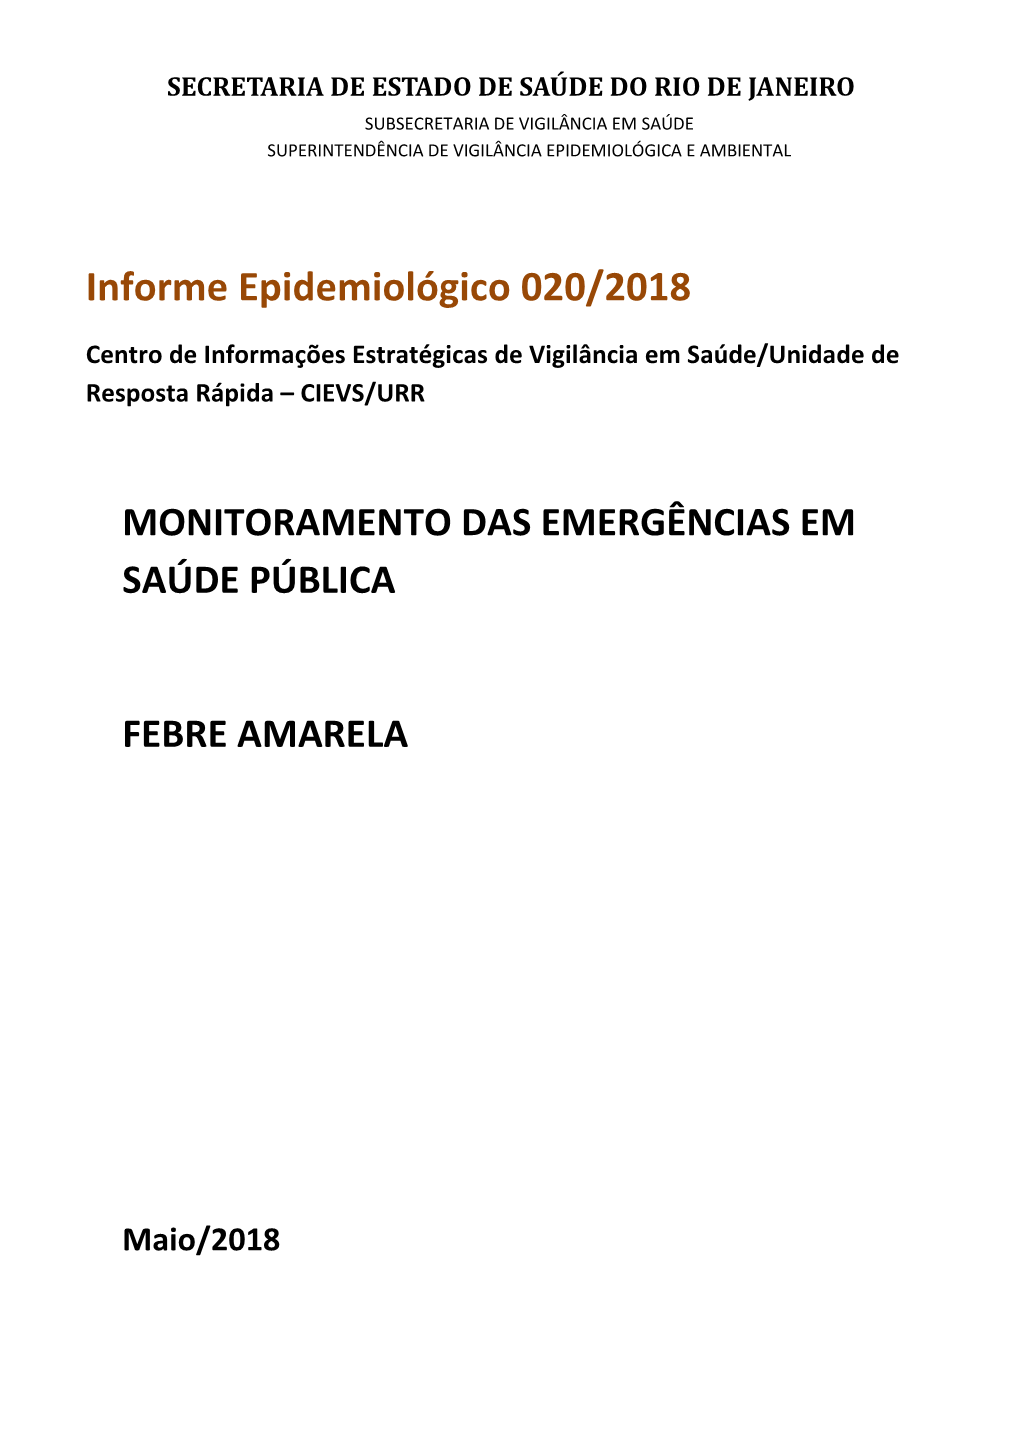 Informe Epidemiológico 020/2018